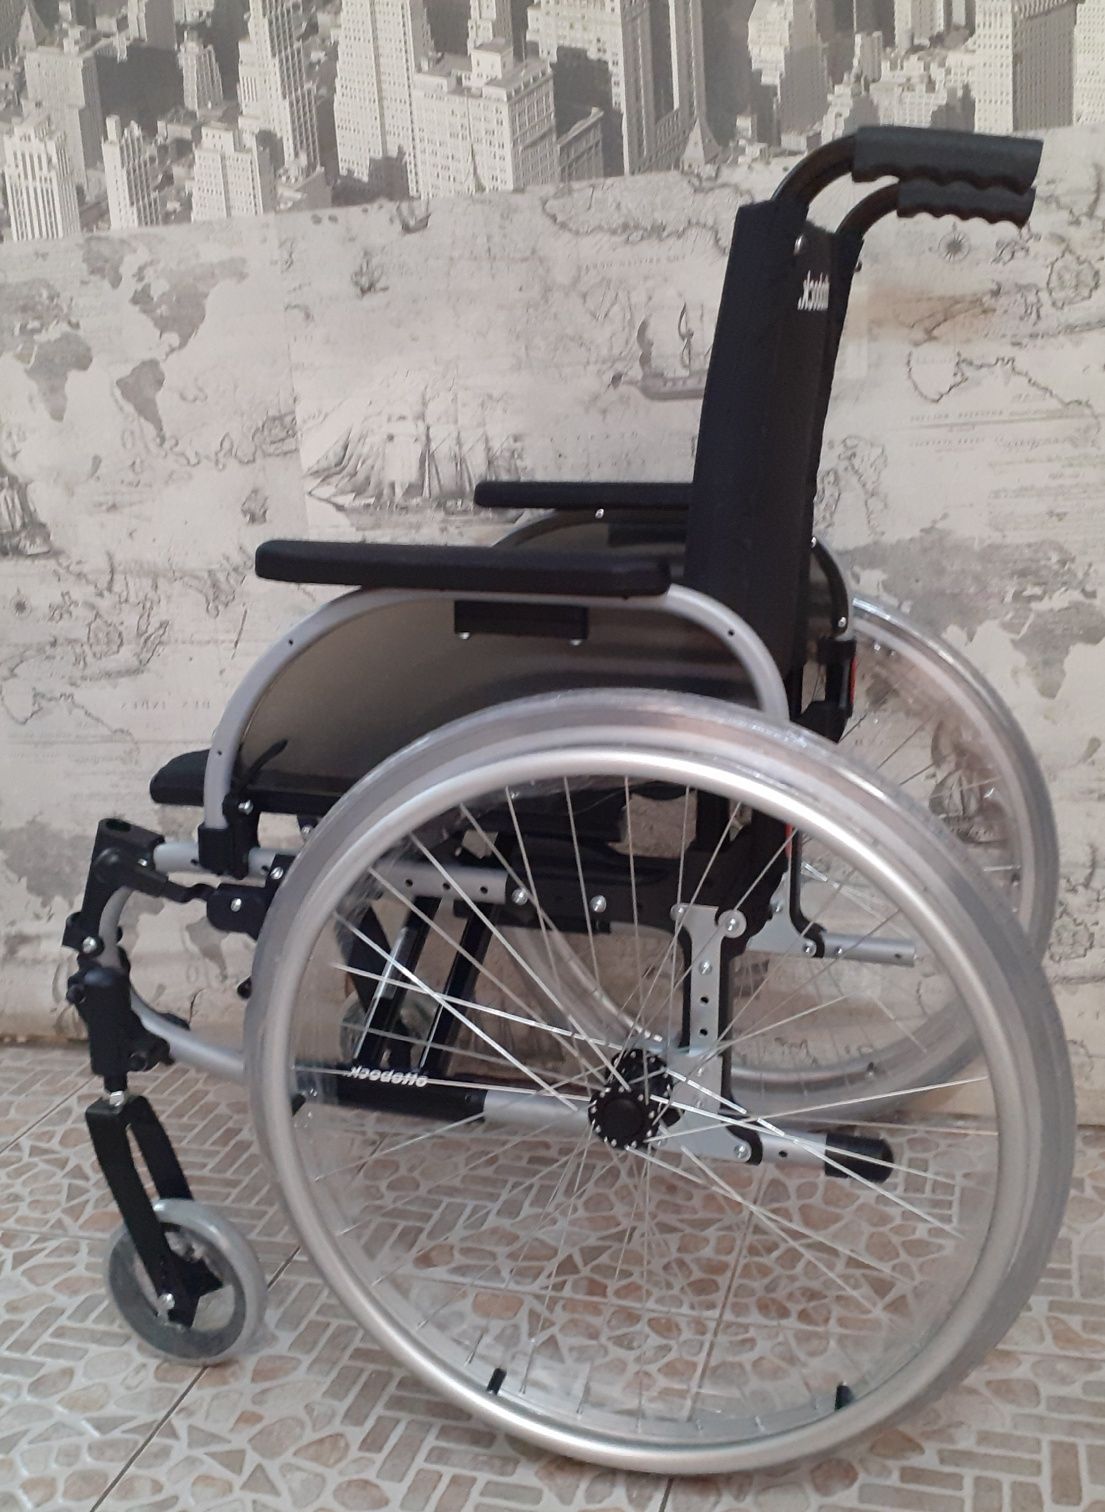 Привозная инвалидная кресло-коляска из Германии фирма  Мейра Оттобок.